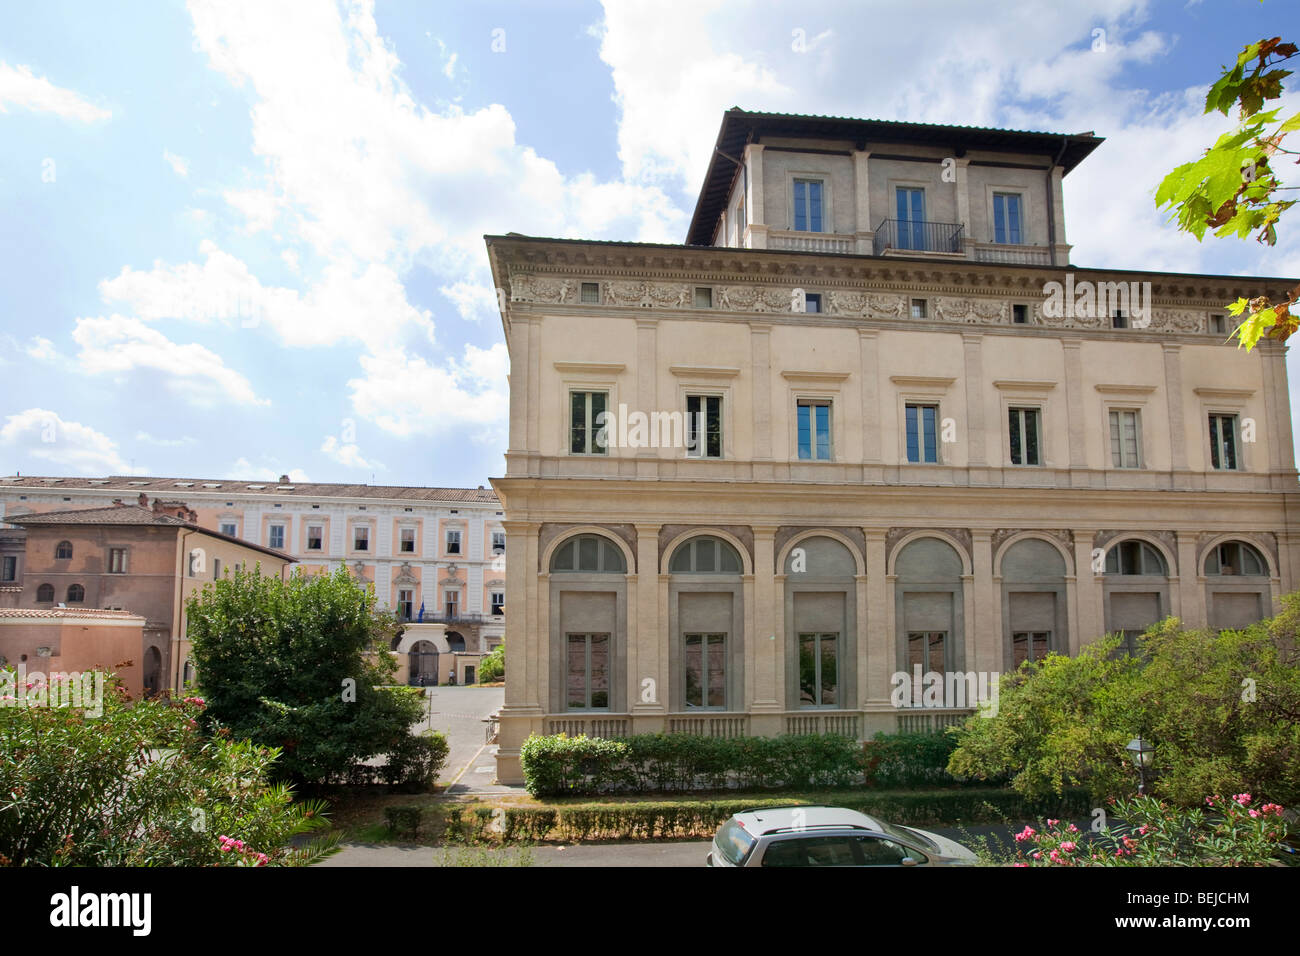 Villa Farnesina, Accademia Nazionale dei Lincei, Via della Lungara street, Rome, Italy Stock Photo